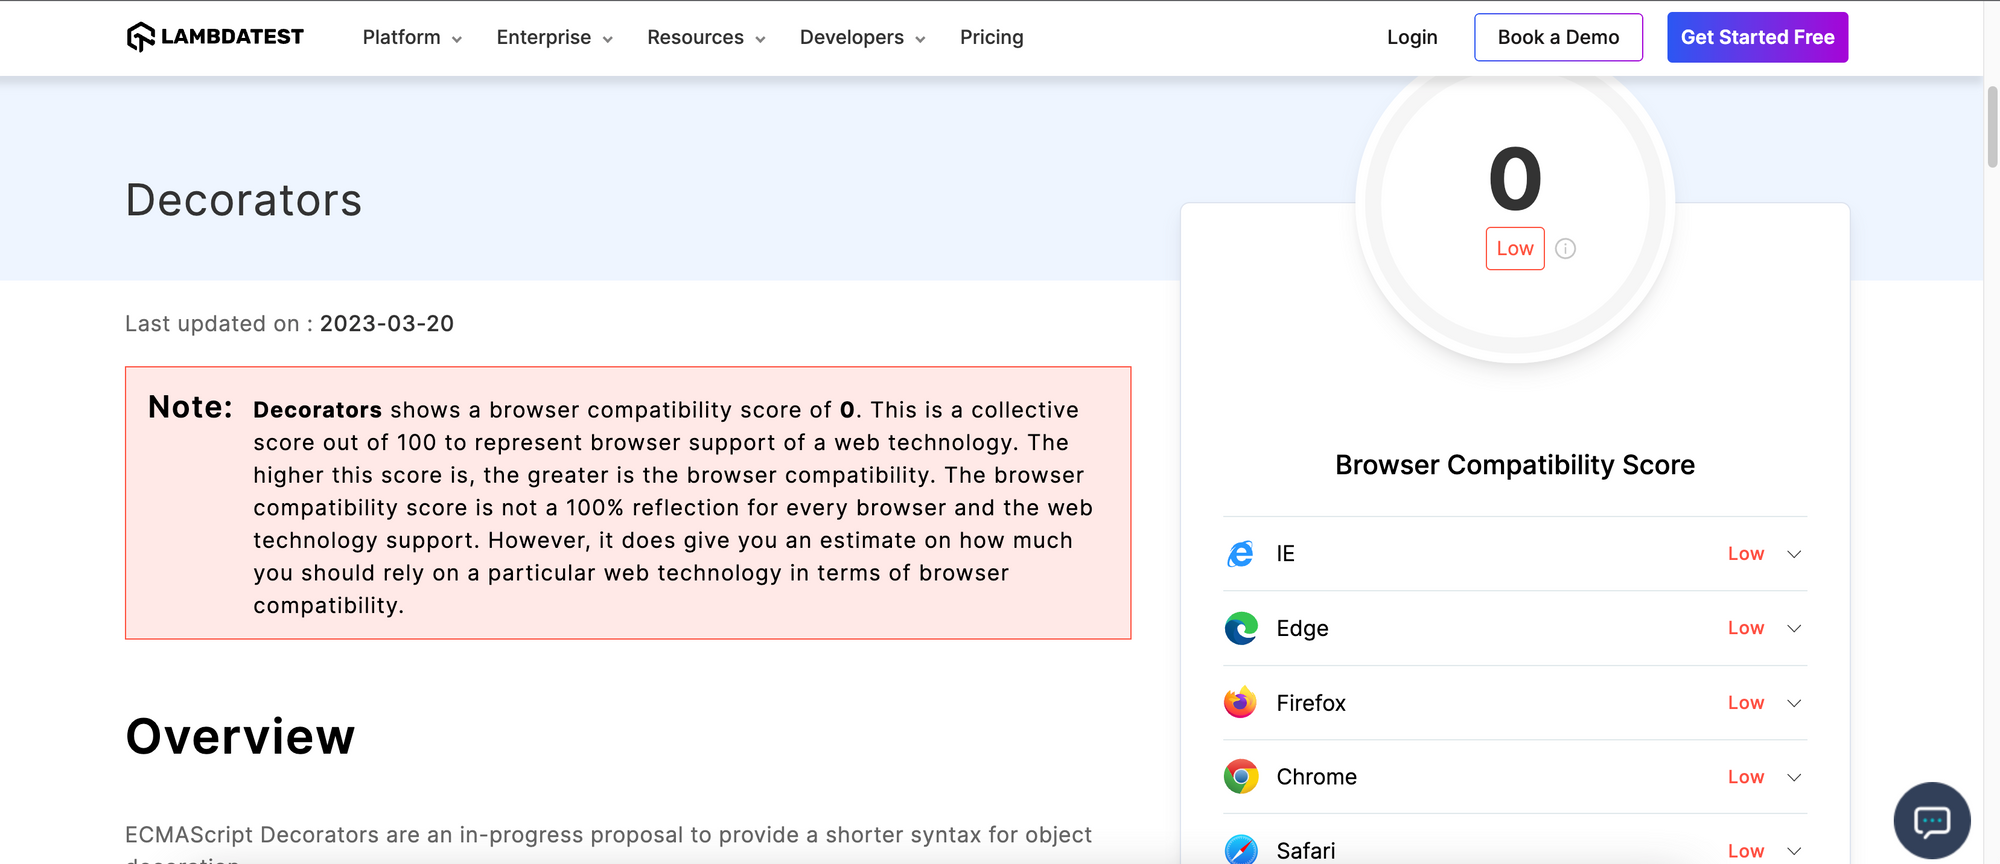 Browser Compatibility Score for TS decorators